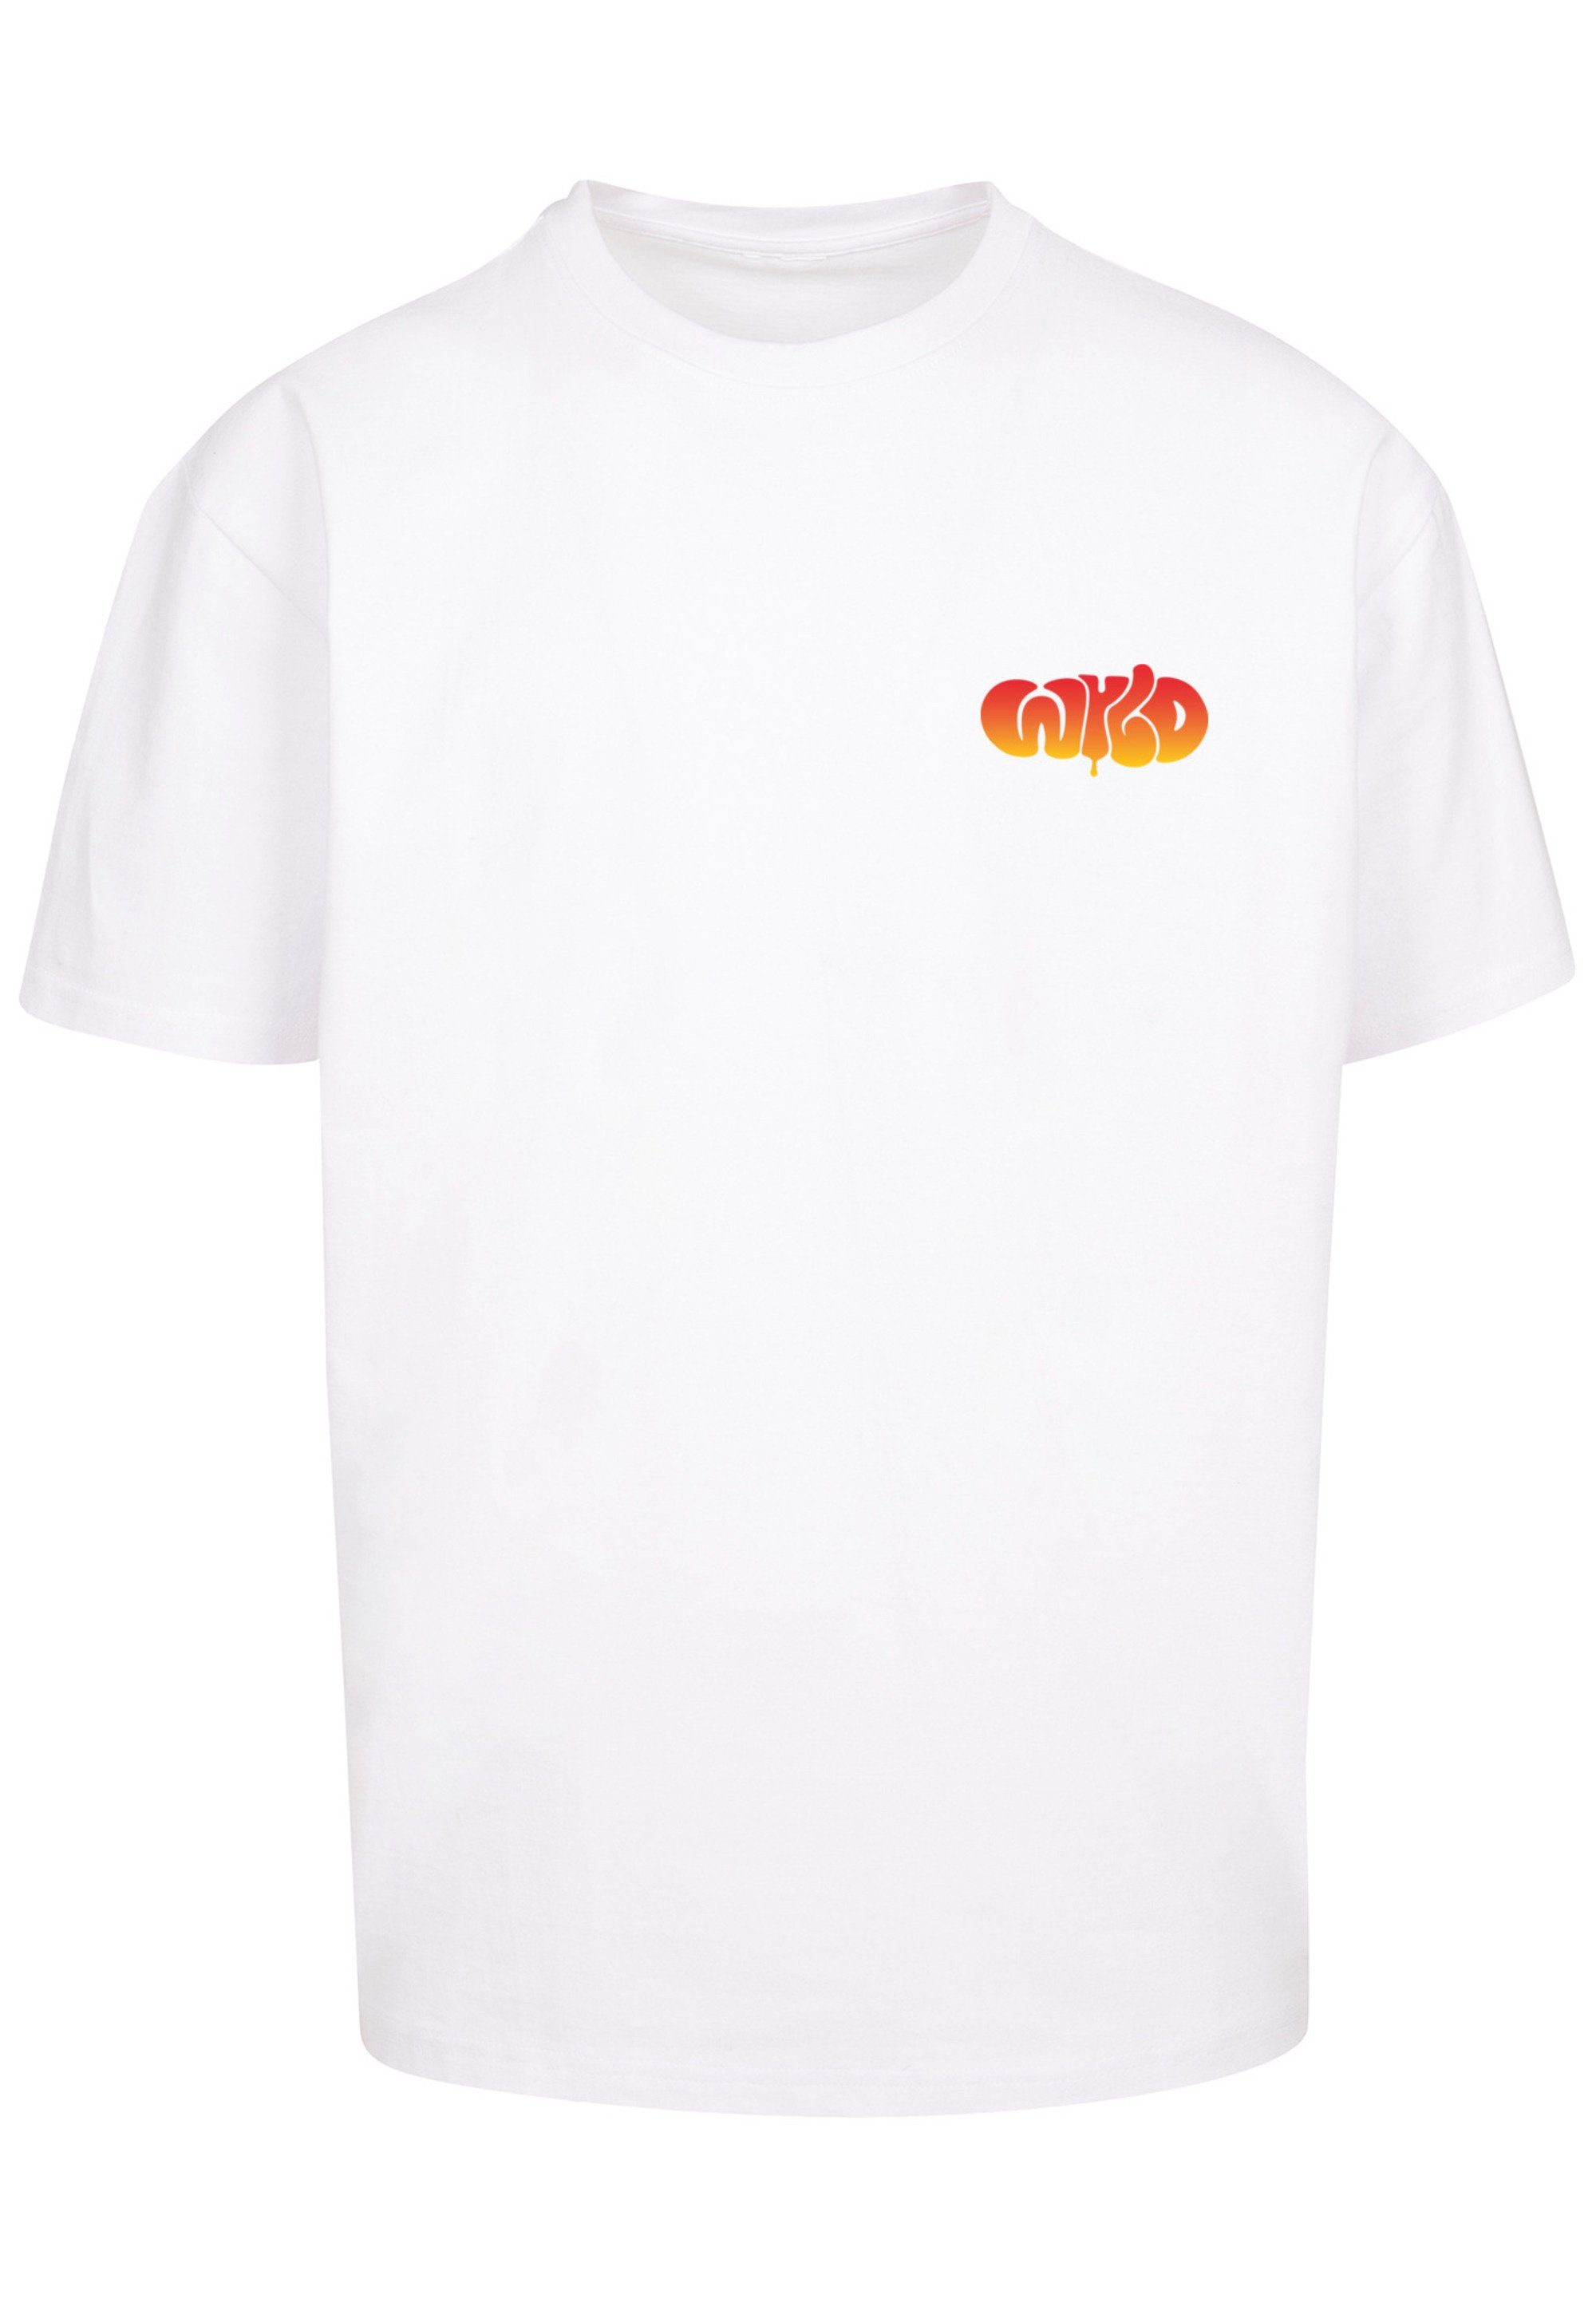 F4NT4STIC T-Shirt WYLD WILD weiß Jugenwort Print